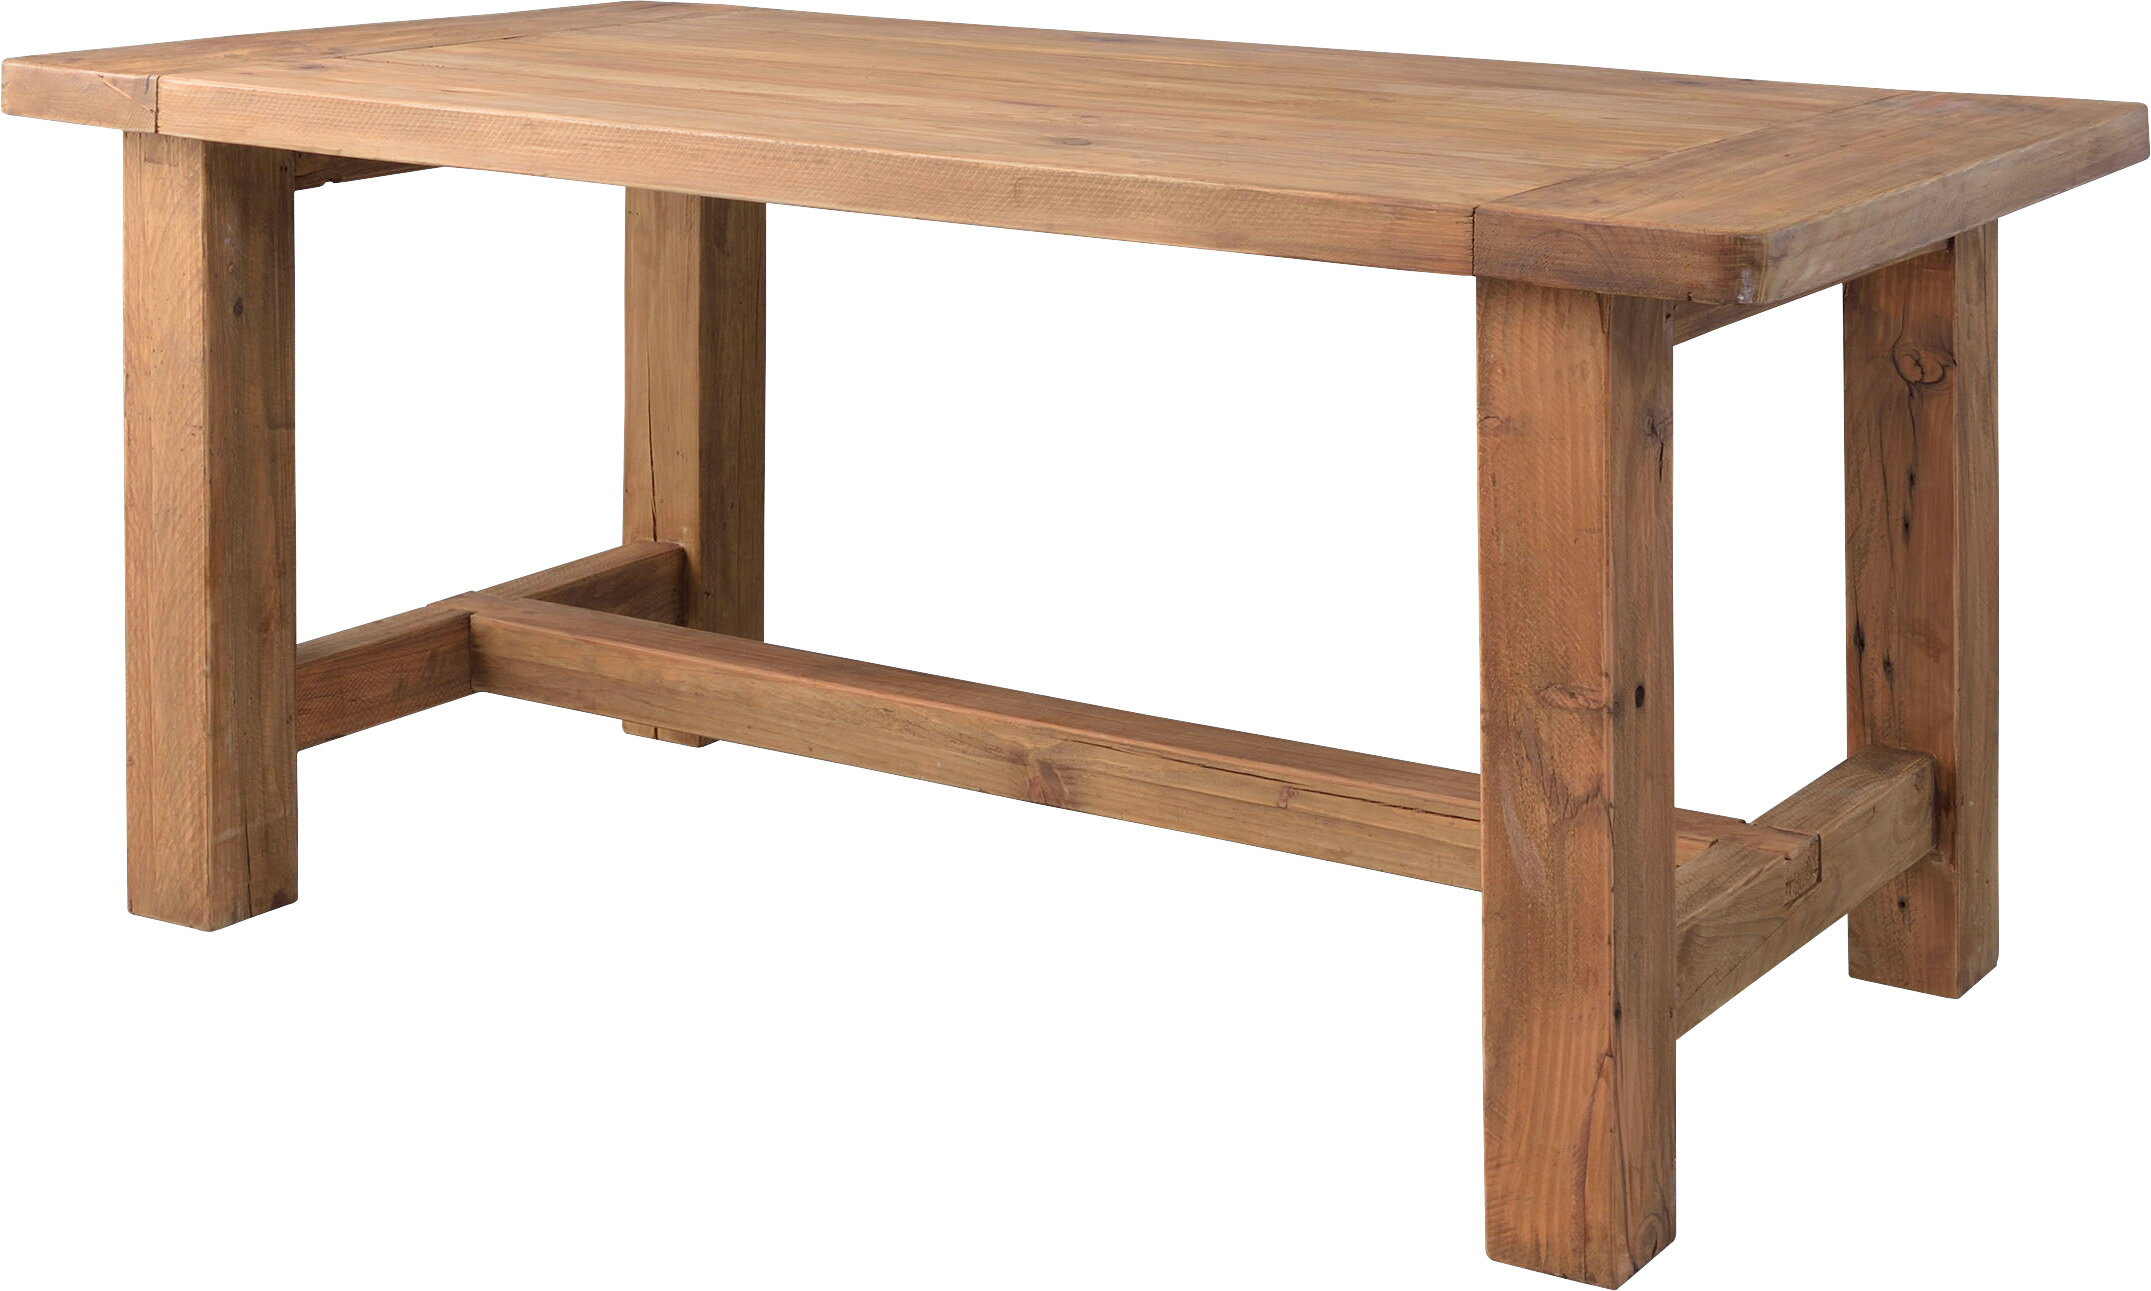 ダイニングテーブル WE-887 ブラウン テーブル 食卓テーブル 木製 天然木 パイン古材 アンティーク シンプル レトロ 幅160cm 什器 おしゃれ 重厚感 ROOM ESSENCE 展示用 オフィス 魅力 重厚 高級感 フランス風の家具